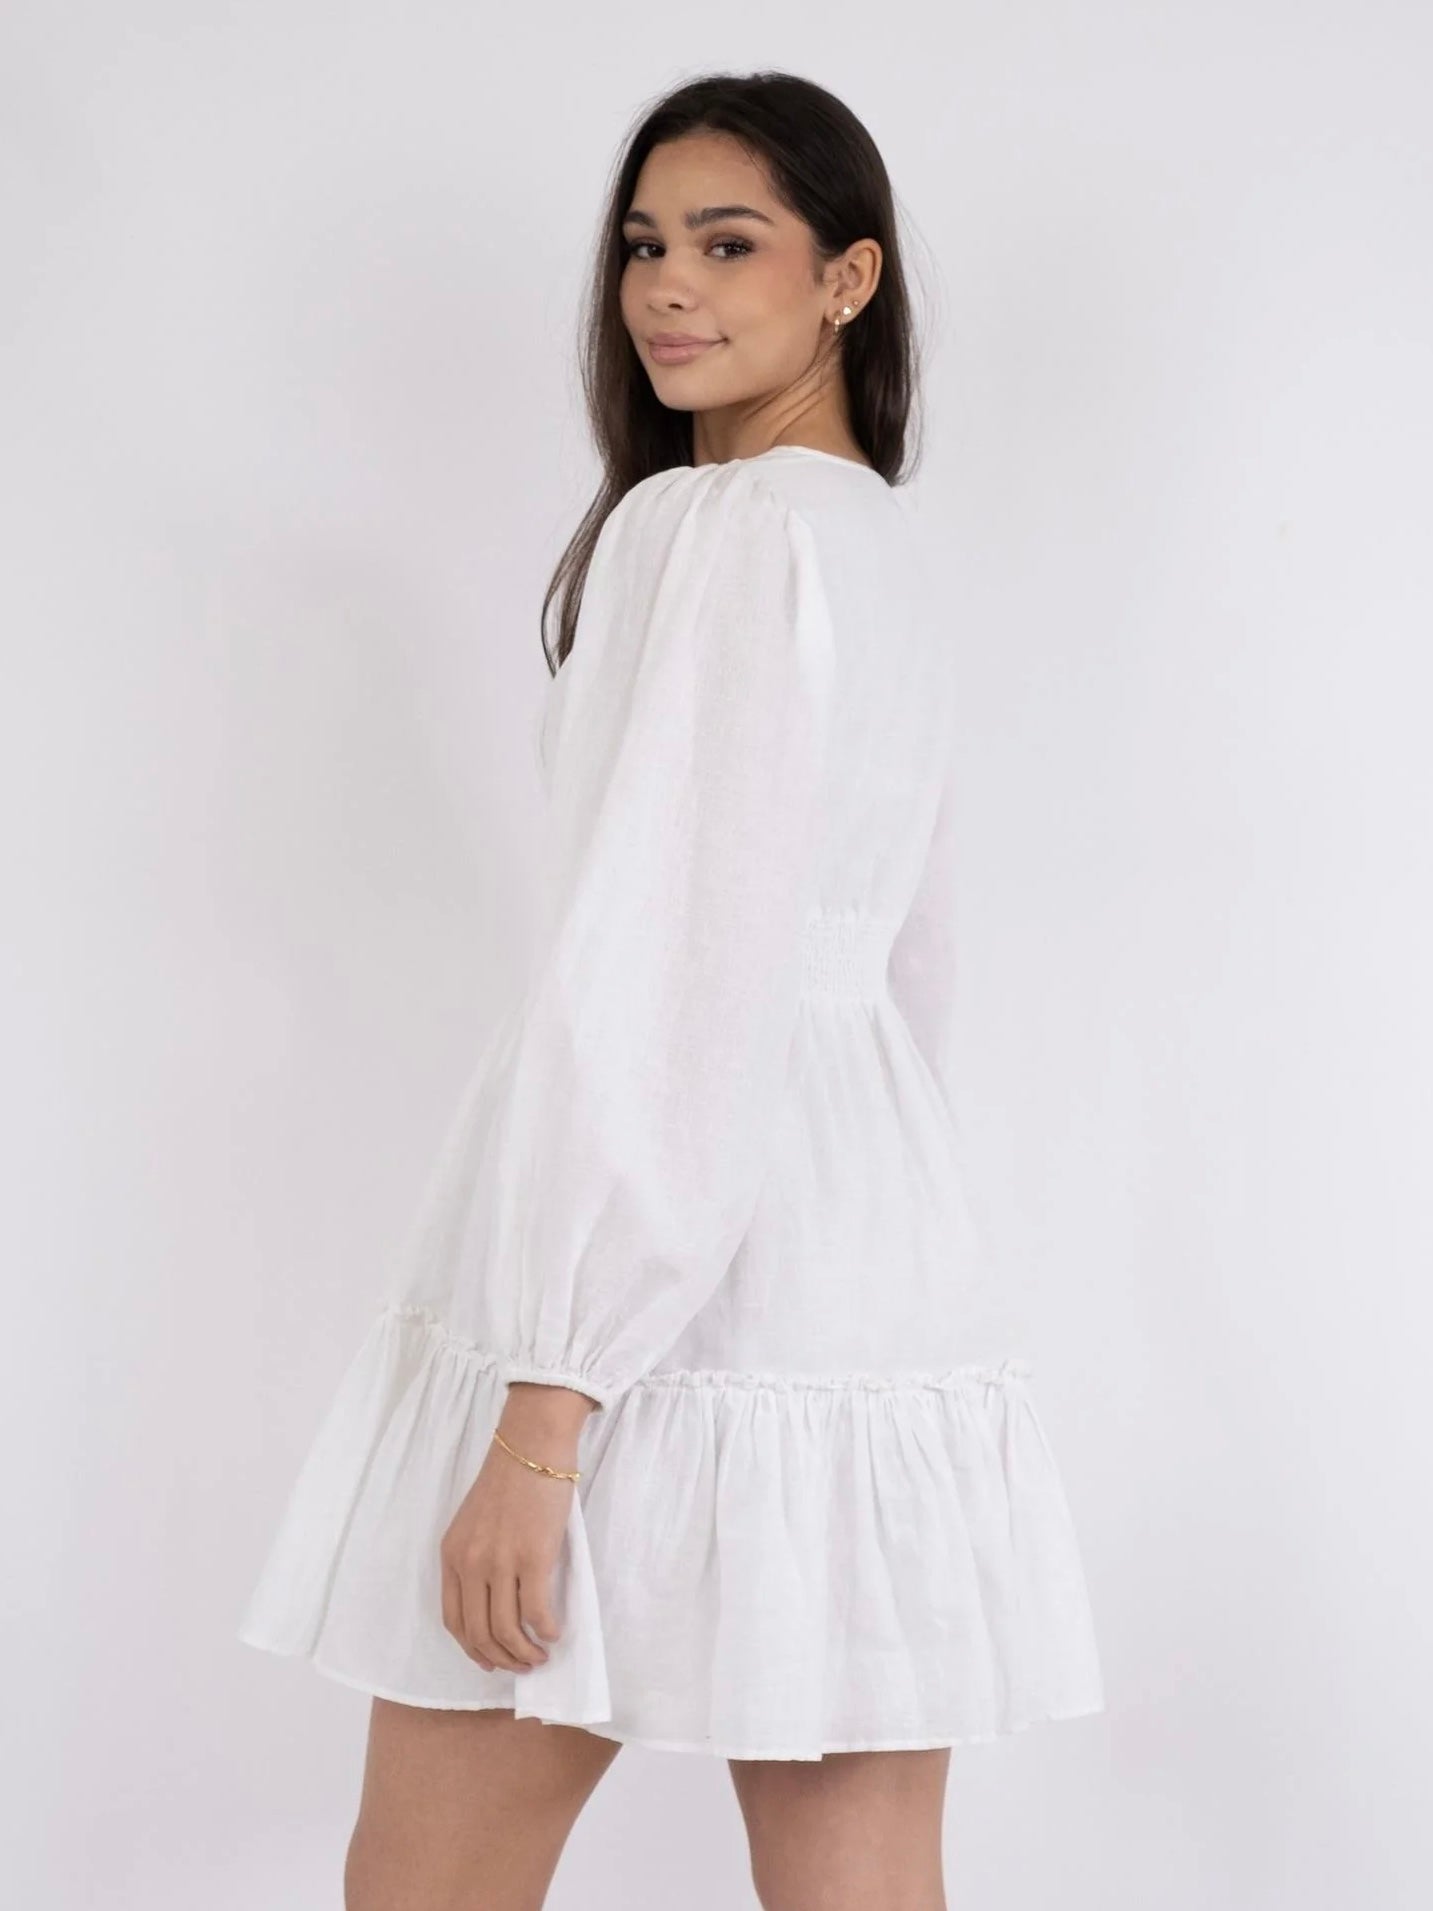 
                  
                    NEO NOIR RIHANA LINEN DRESS WHITE
                  
                